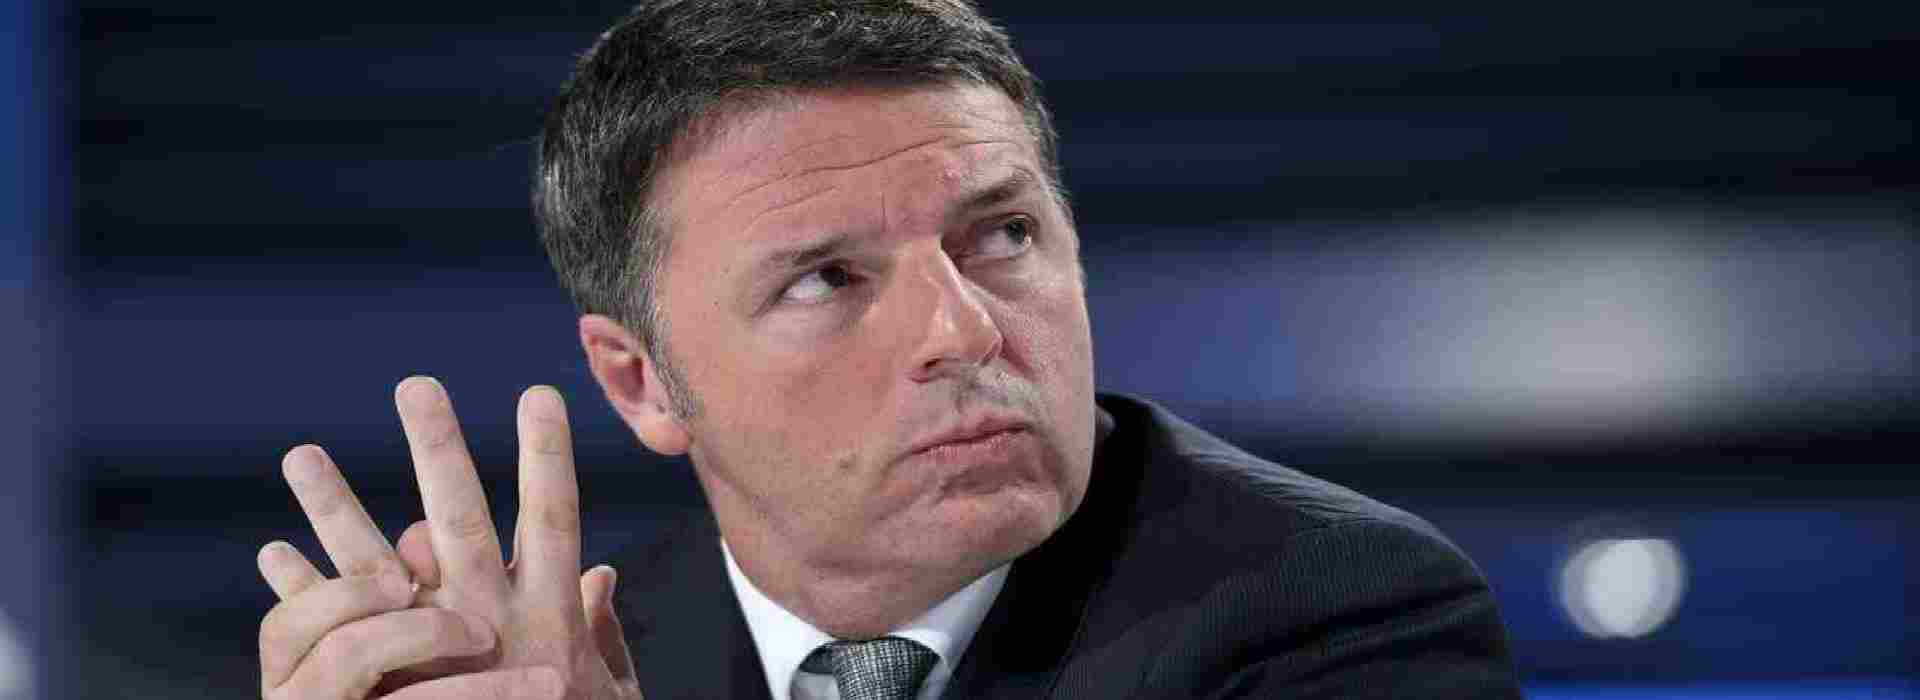 Busta con proiettili a Matteo Renzi